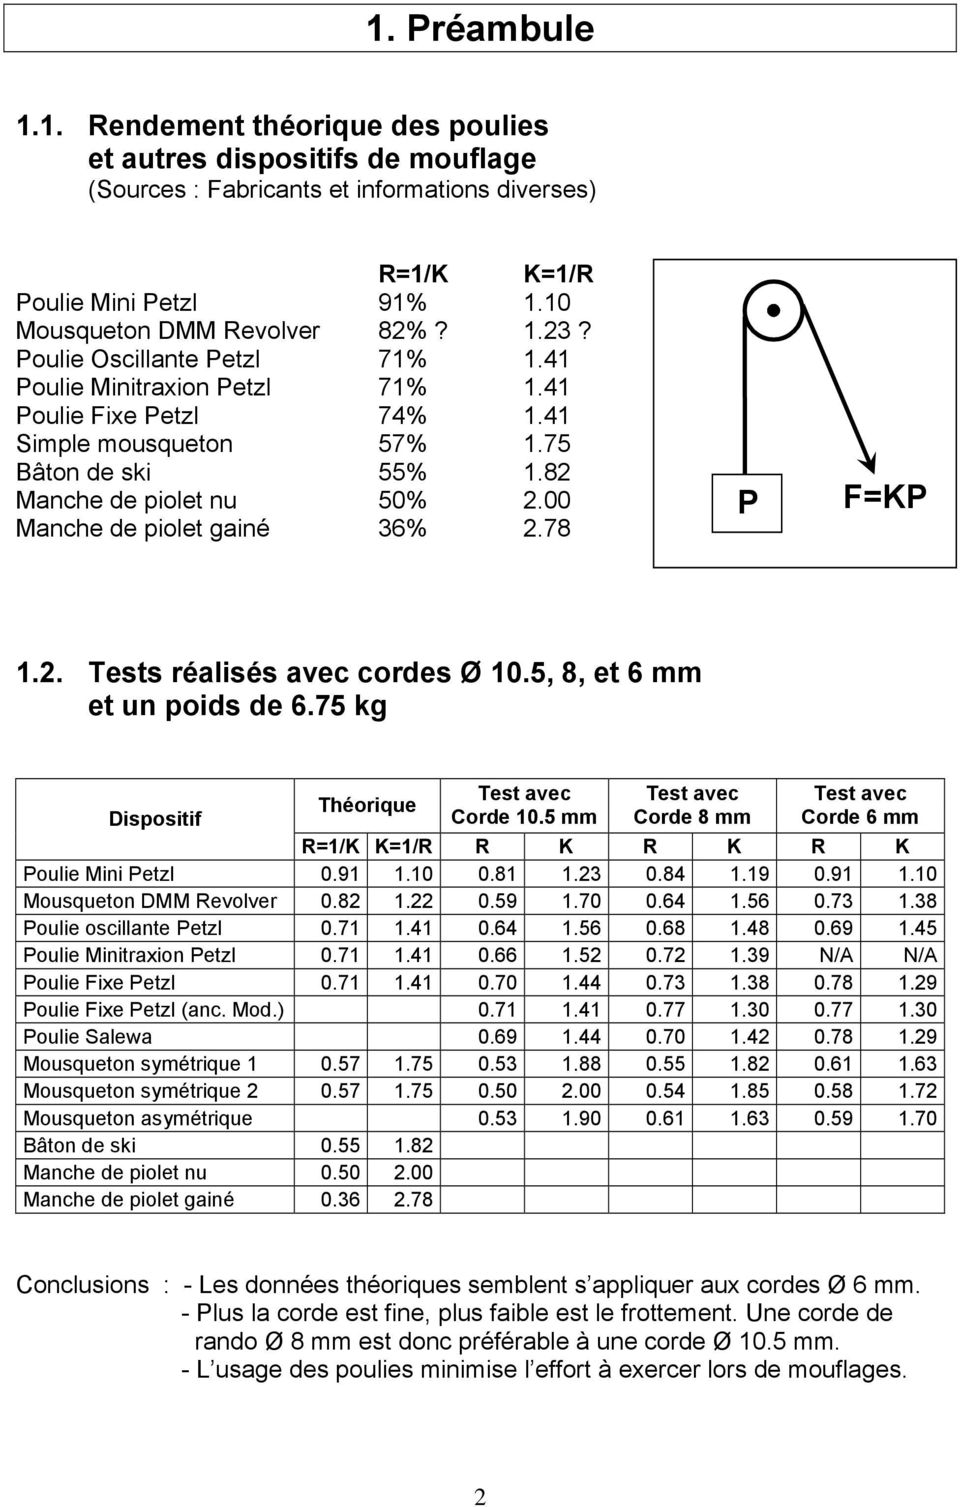 Comment calculer le rapport de mouflage - Petzl France